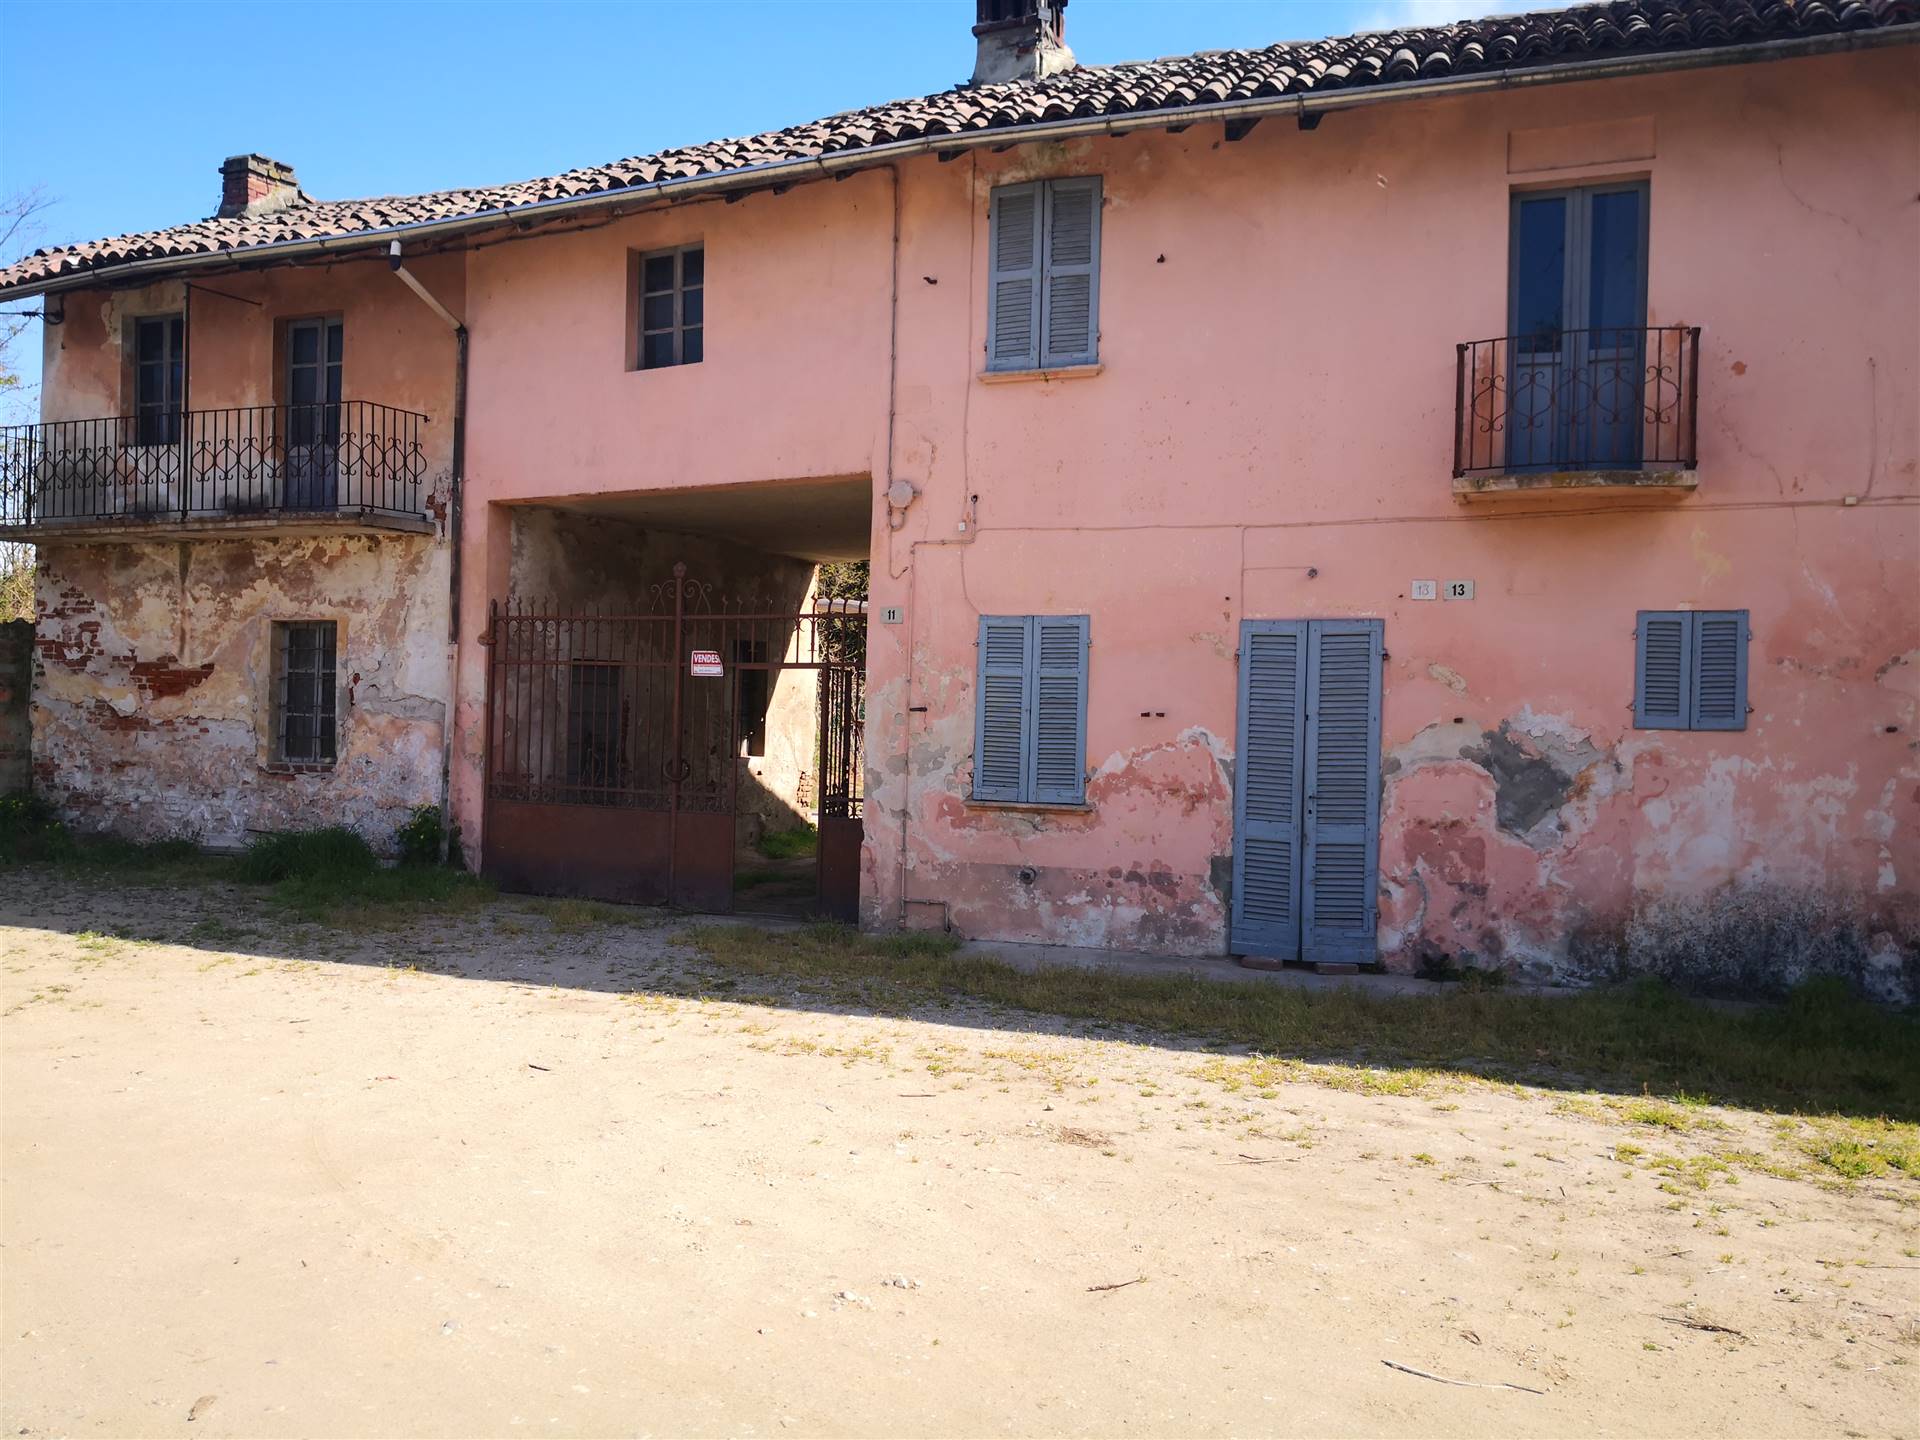 Rustico / Casale in vendita a Mortara, 5 locali, zona Località: MOLINO FAENZA, prezzo € 80.000 | CambioCasa.it